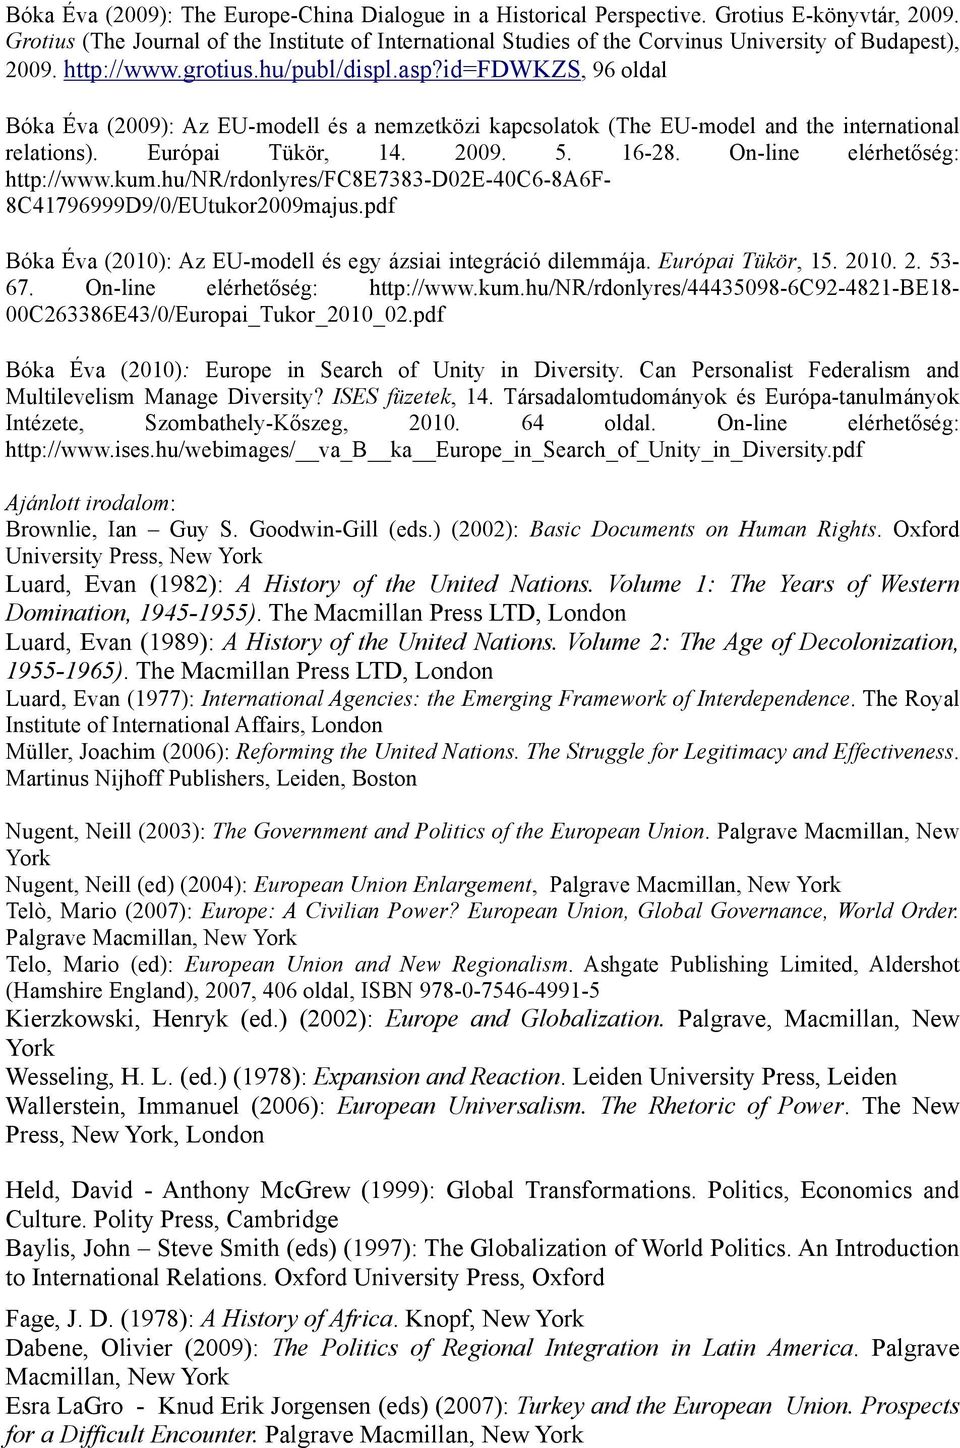 id=fdwkzs, 96 oldal Bóka Éva (2009): Az EU-modell és a nemzetközi kapcsolatok (The EU-model and the international relations). Európai Tükör, 14. 2009. 5. 16-28. On-line elérhetőség: http://www.kum.